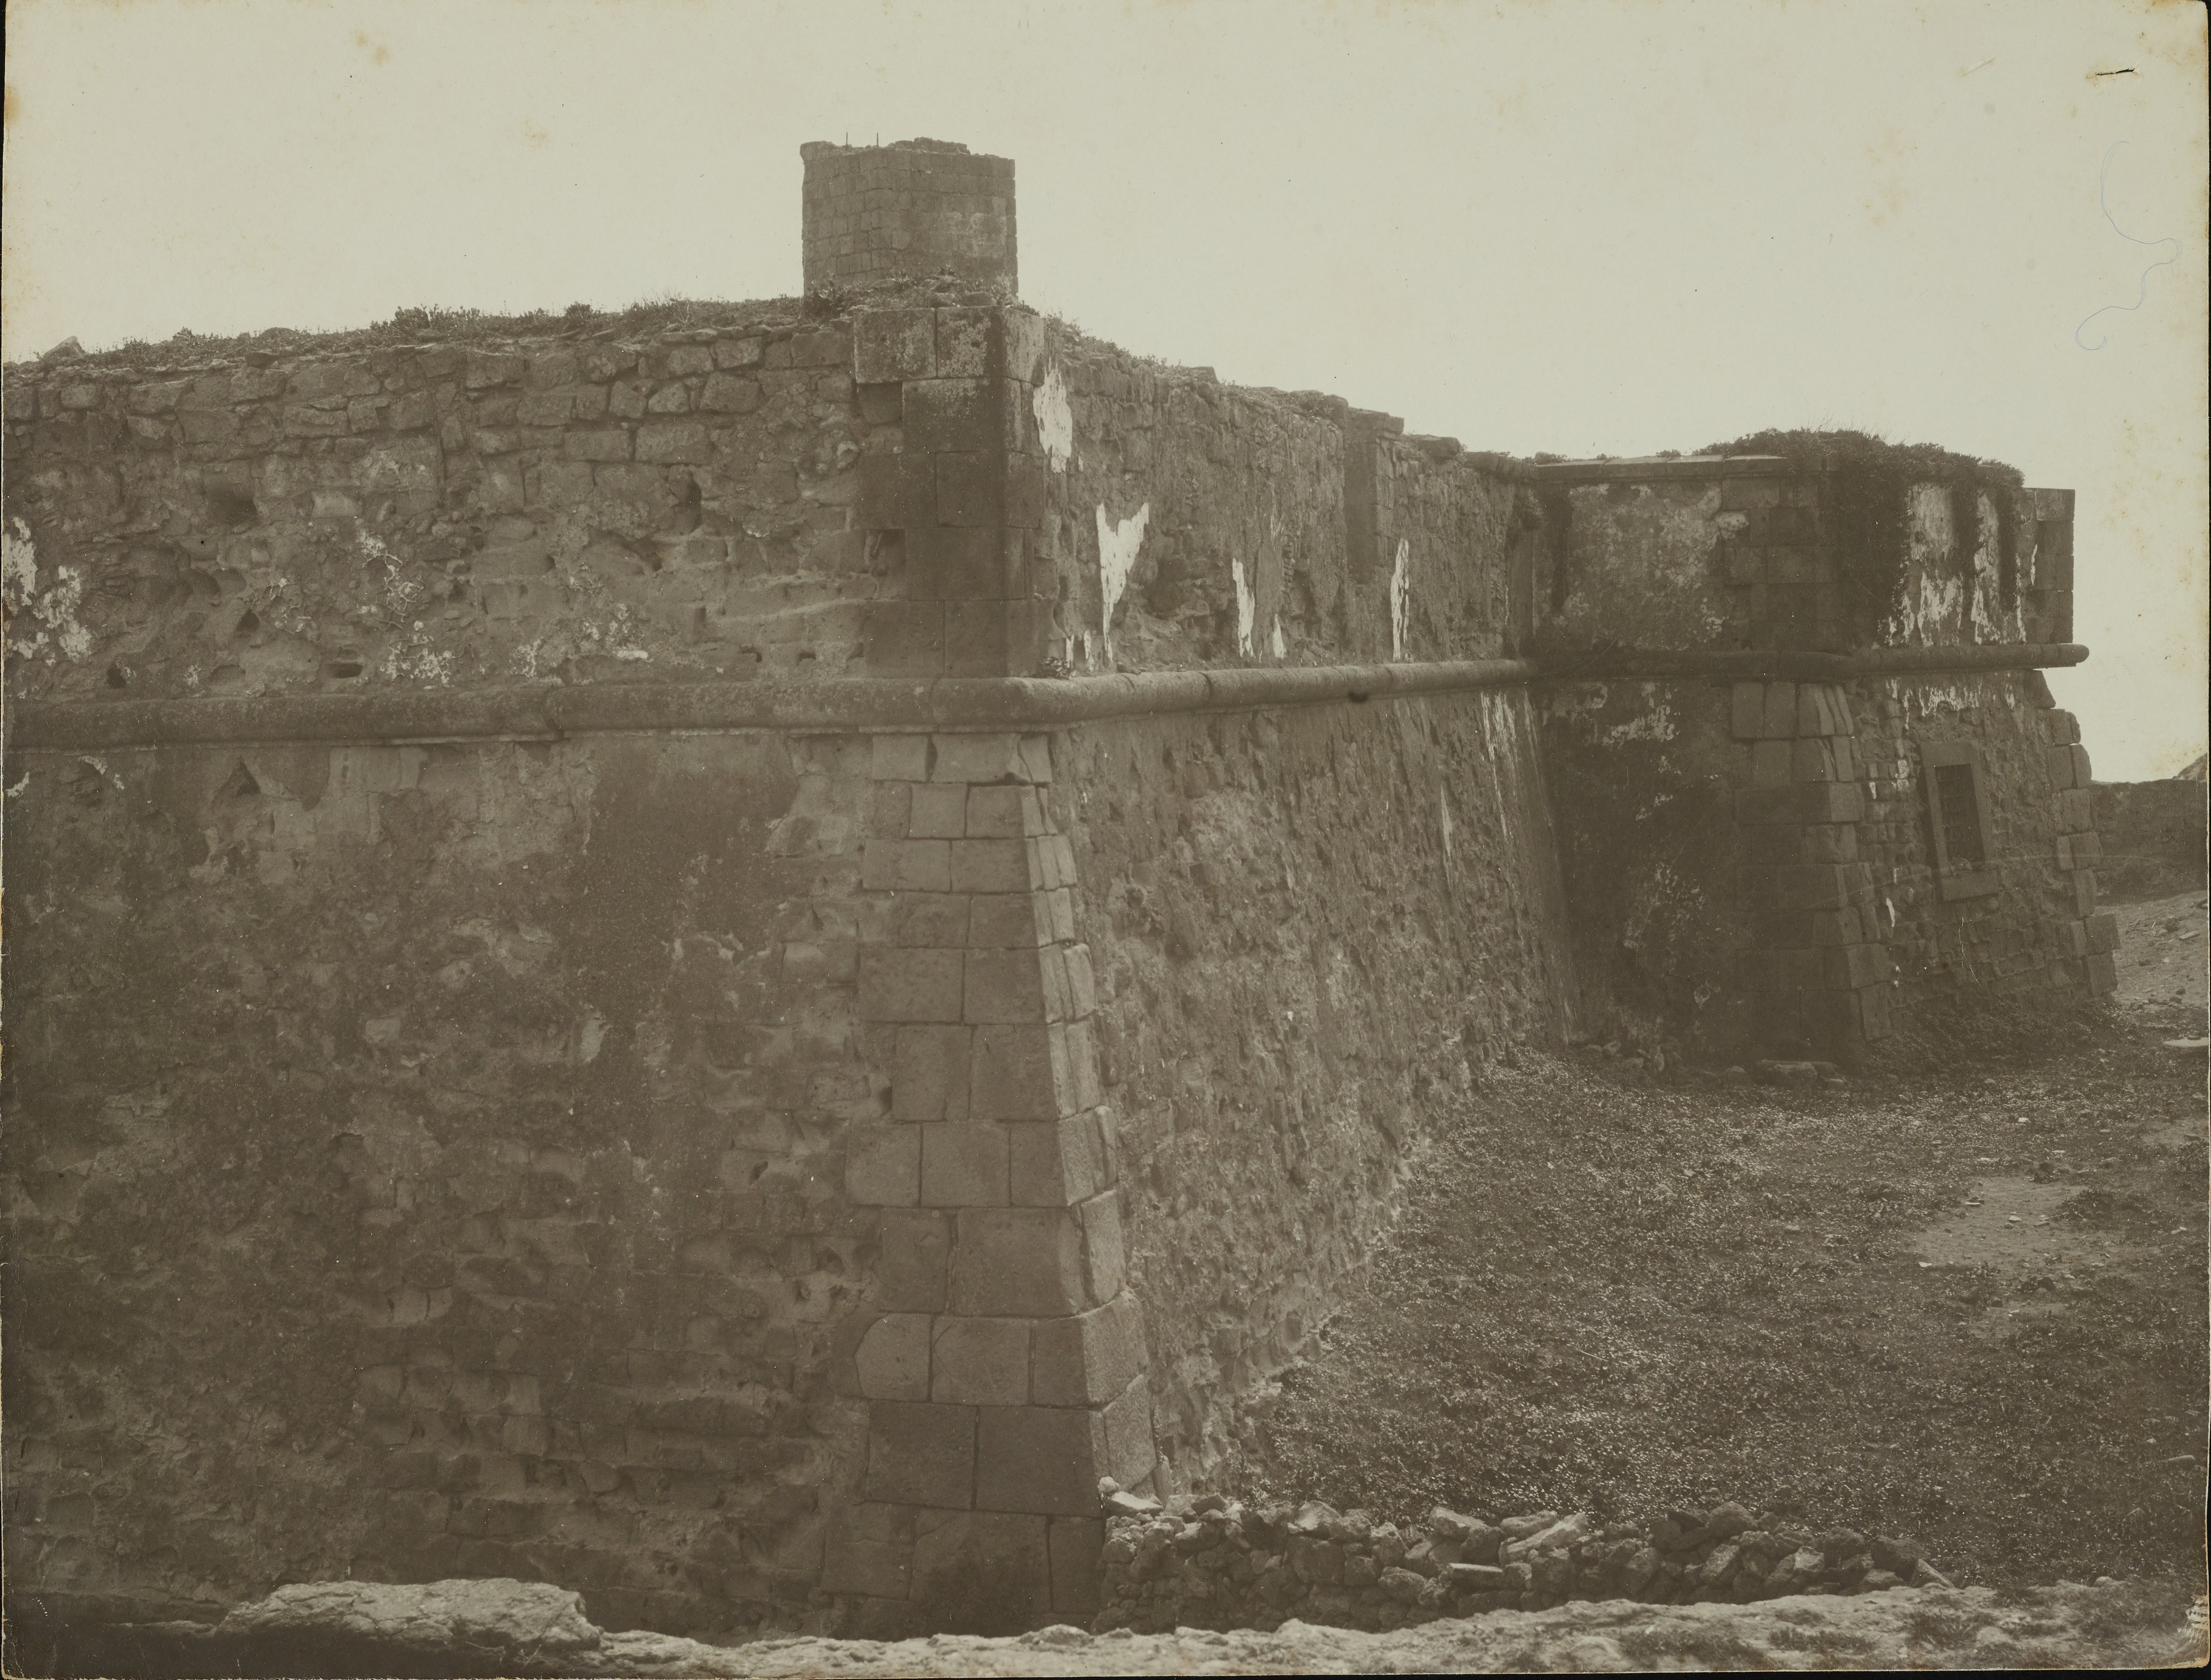 Fotografo non identificato, Napoli, S. Giovanni a Teduccio - Forte di Vigliena, veduta, 1901-1925, gelatina ai sali d'argento, MPI6071998